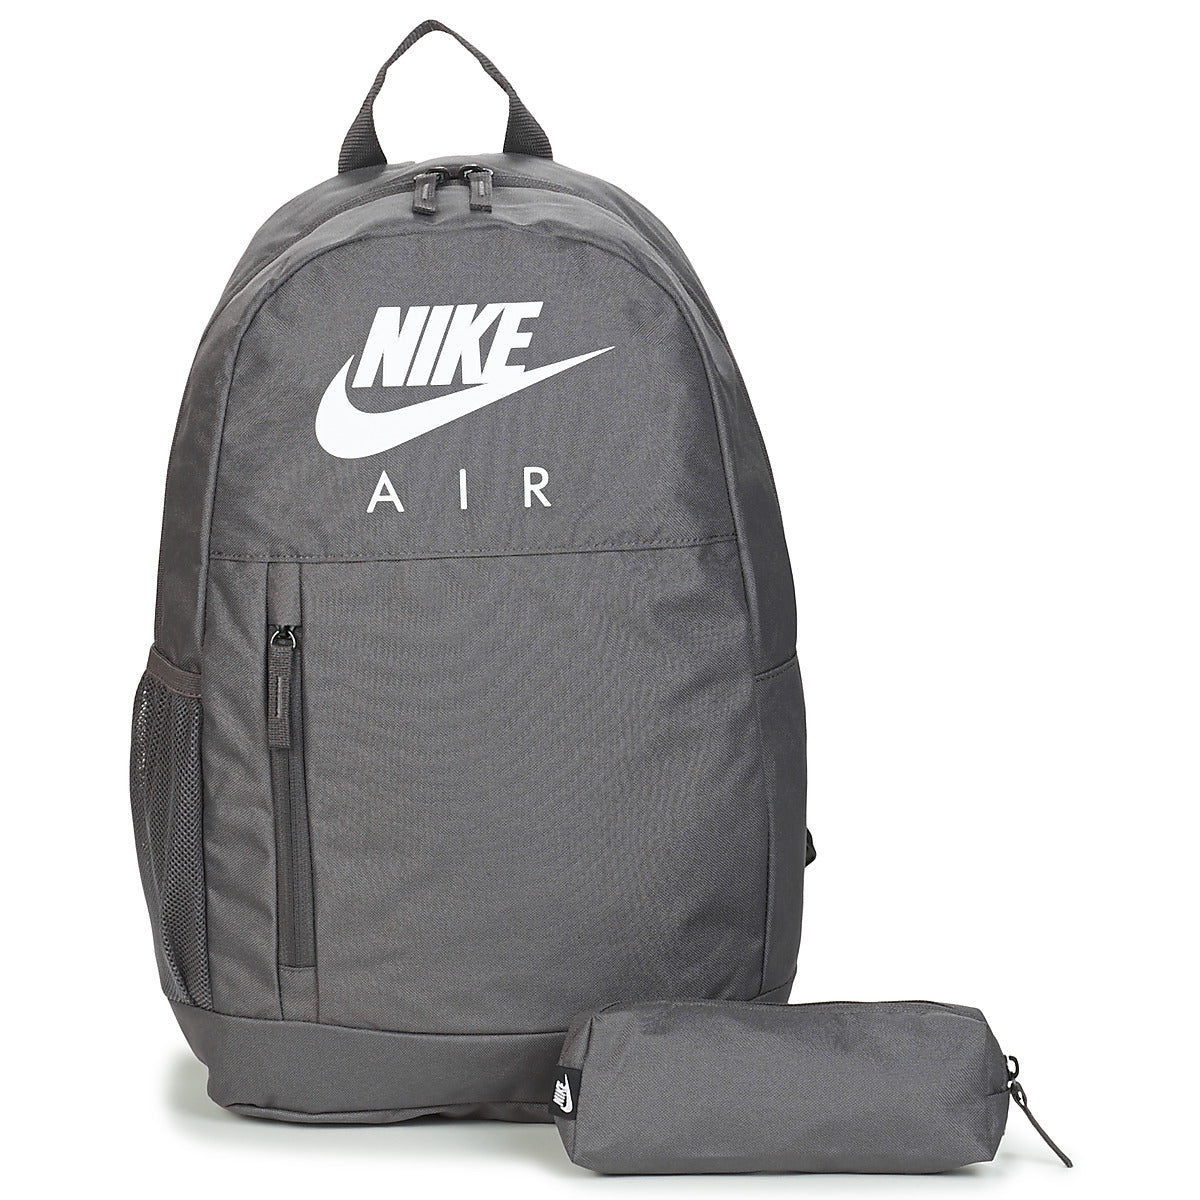 Nike Elemental Backpack in Grey/White 